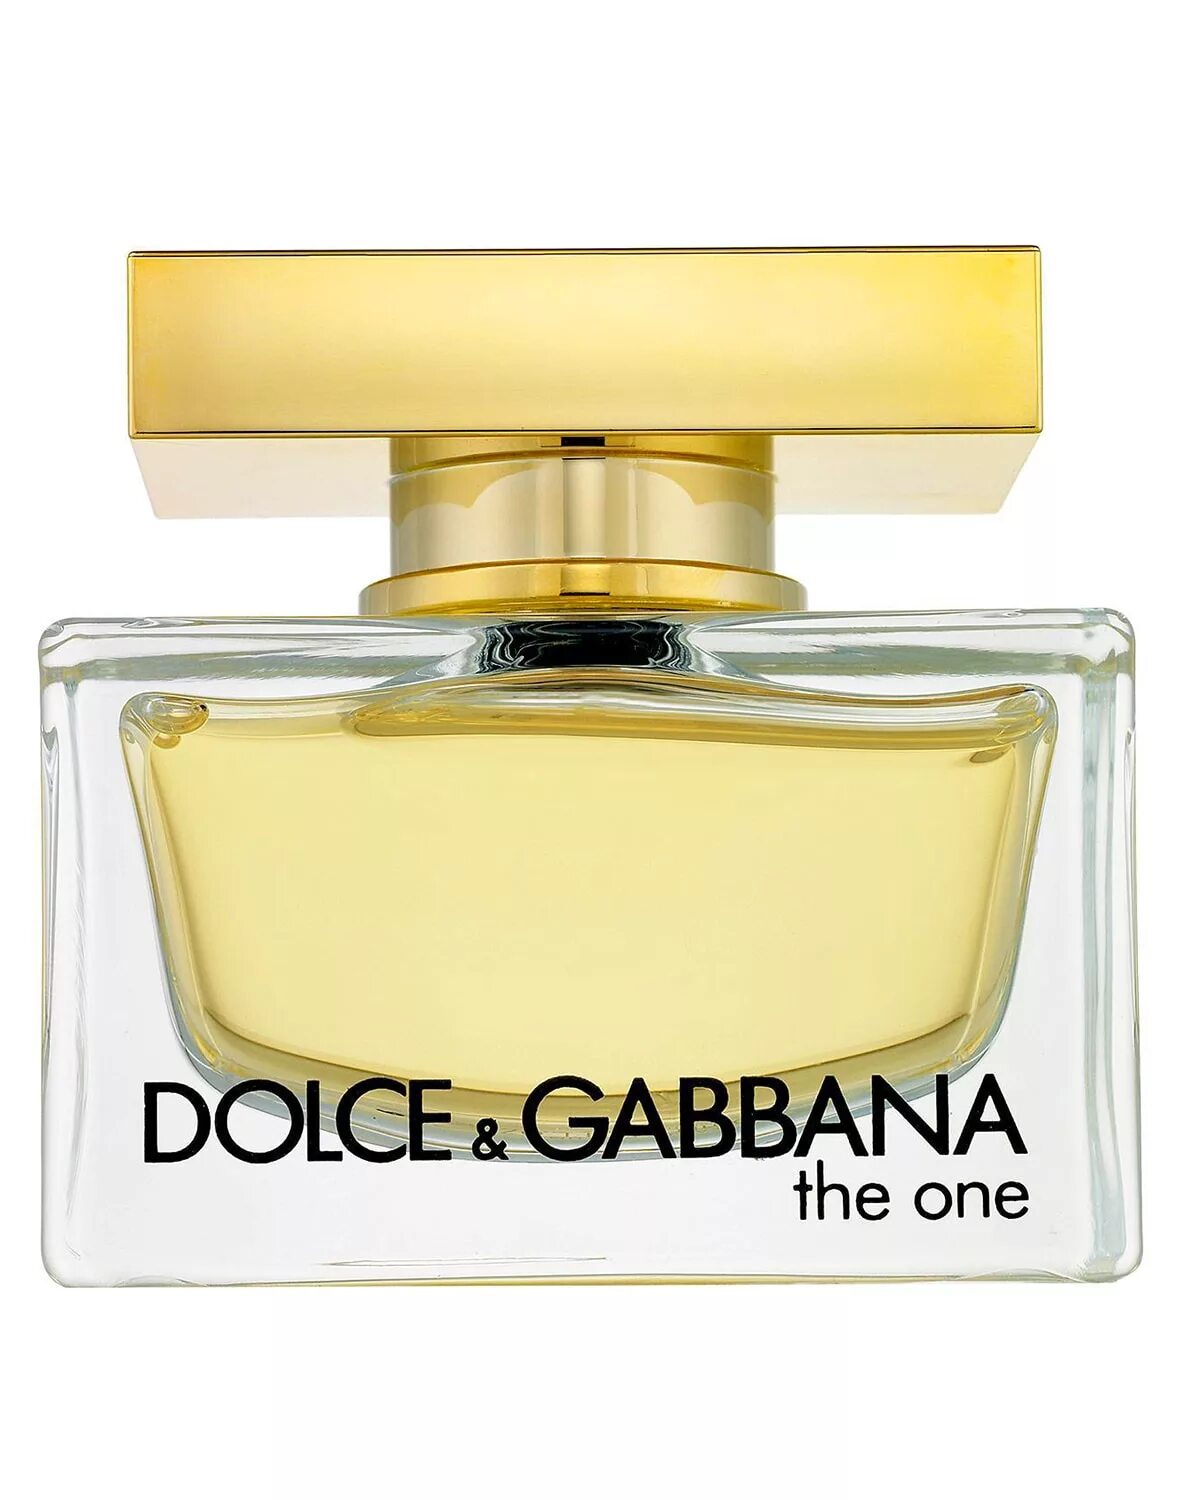 Дольче габбана производитель. Духи лольче габано Зевар. Dolce & Gabbana the one women EDP, 75 ml. Dolce Gabbana the one 50ml. Dolce Gabbana the one 75 ml.